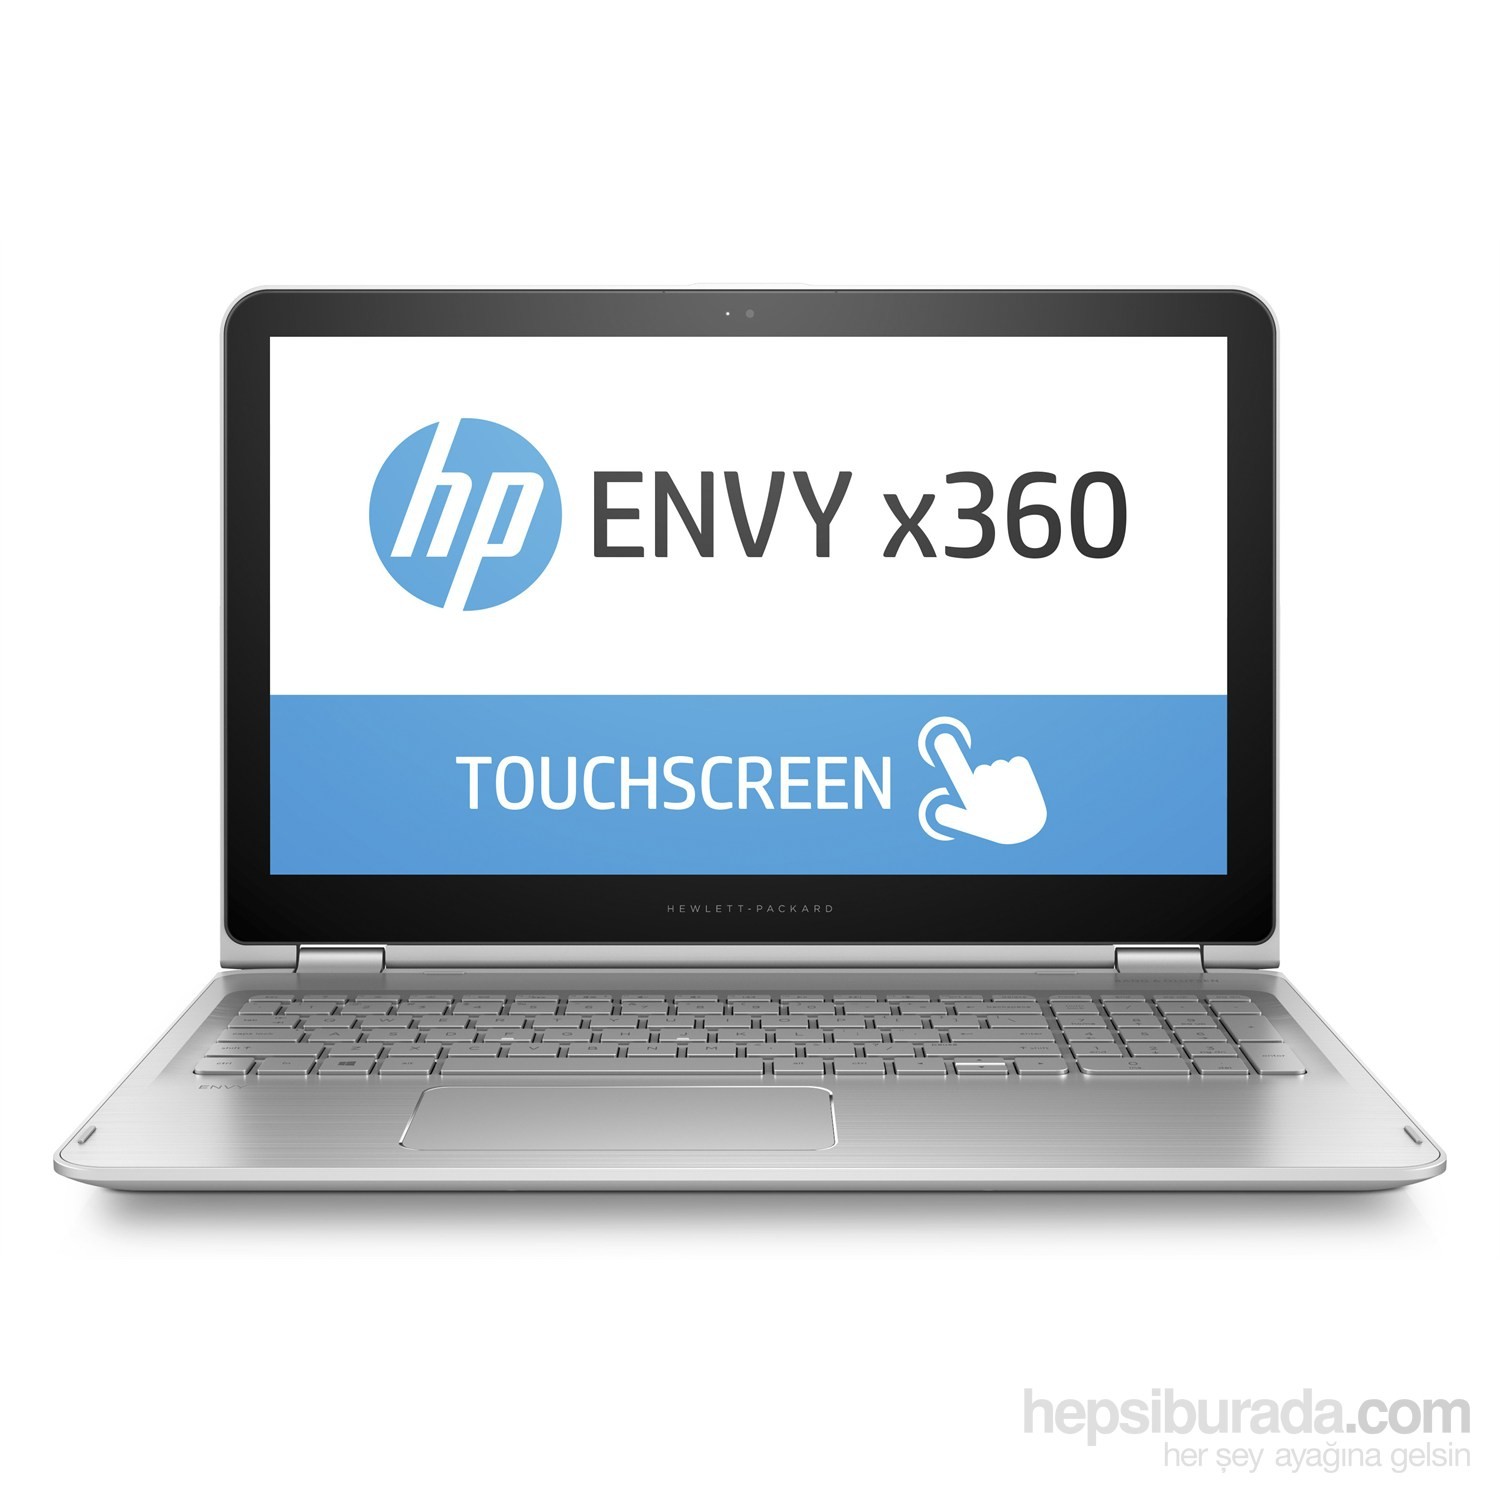 HP Envy x360 15-w101nt Intel Core i7 6500U 2.5GHz/3.1GHz 8GB 1TB 15.6